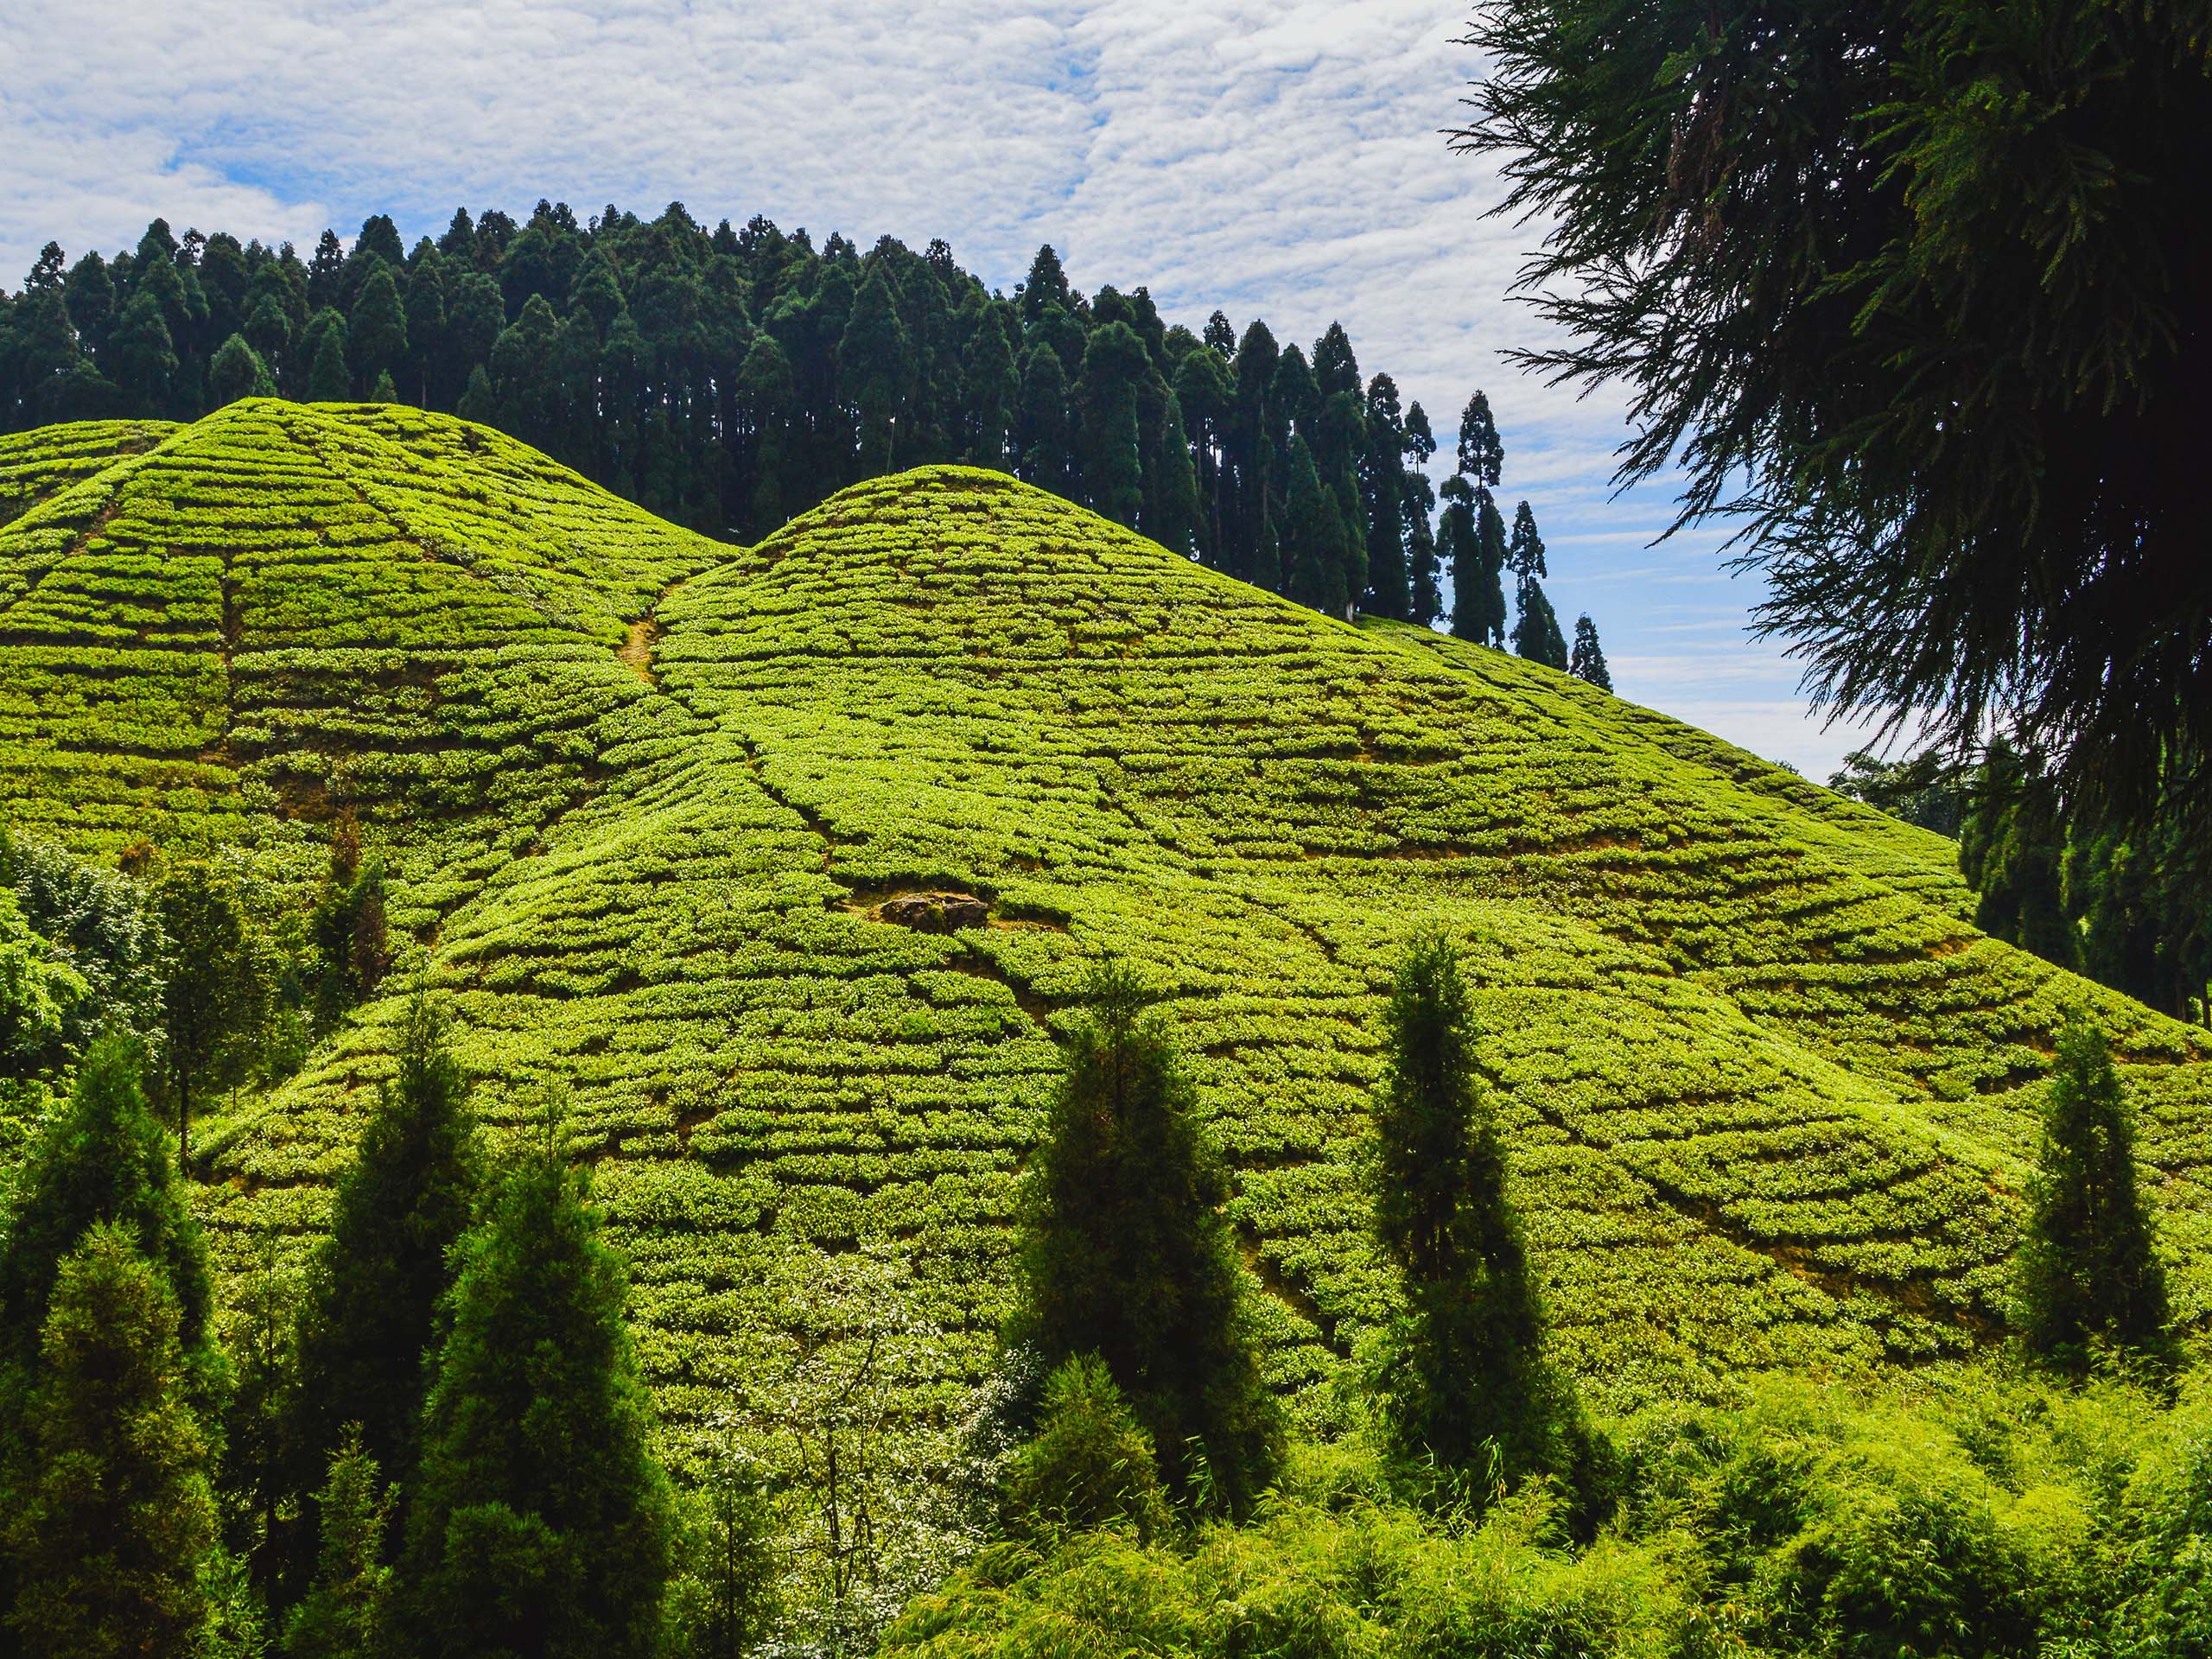 Darjeeling is a great spot for tea lovers